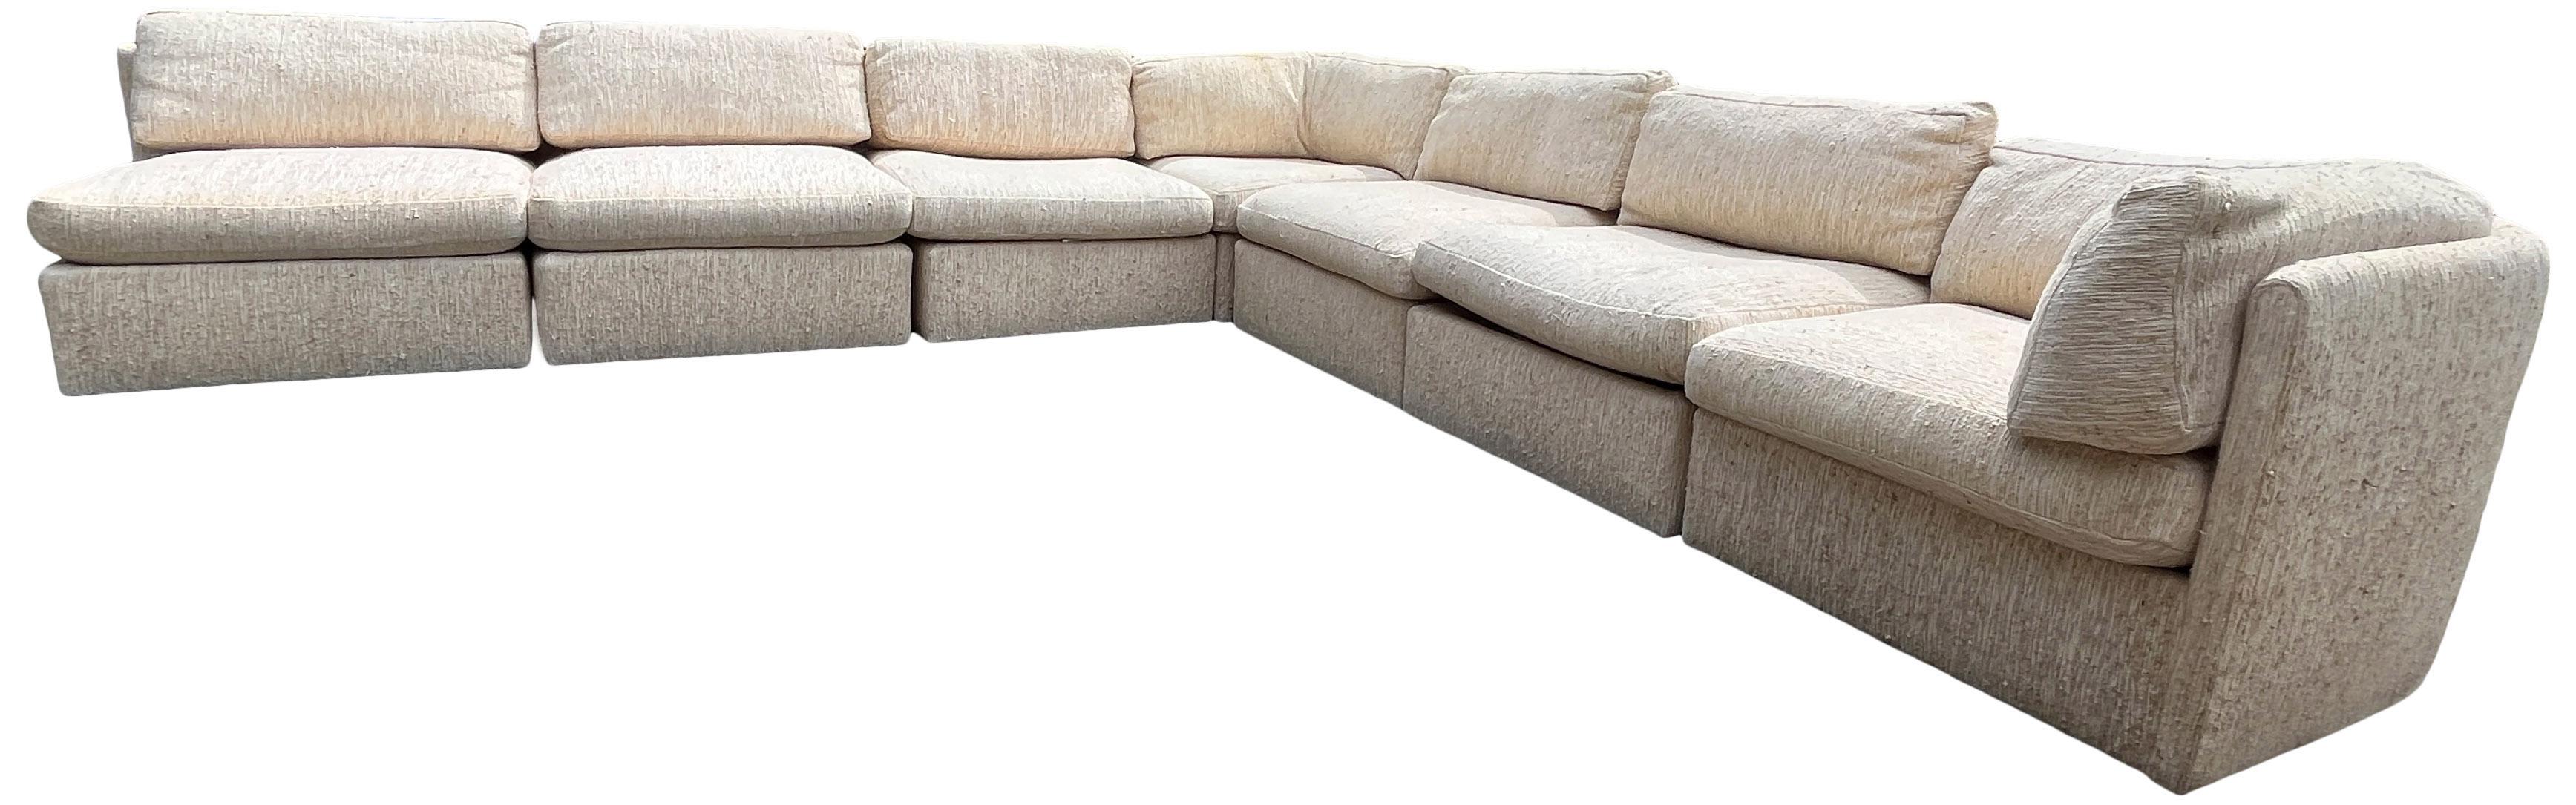 Milo Baughman Sectional Sofa for Thayer Coggin 2